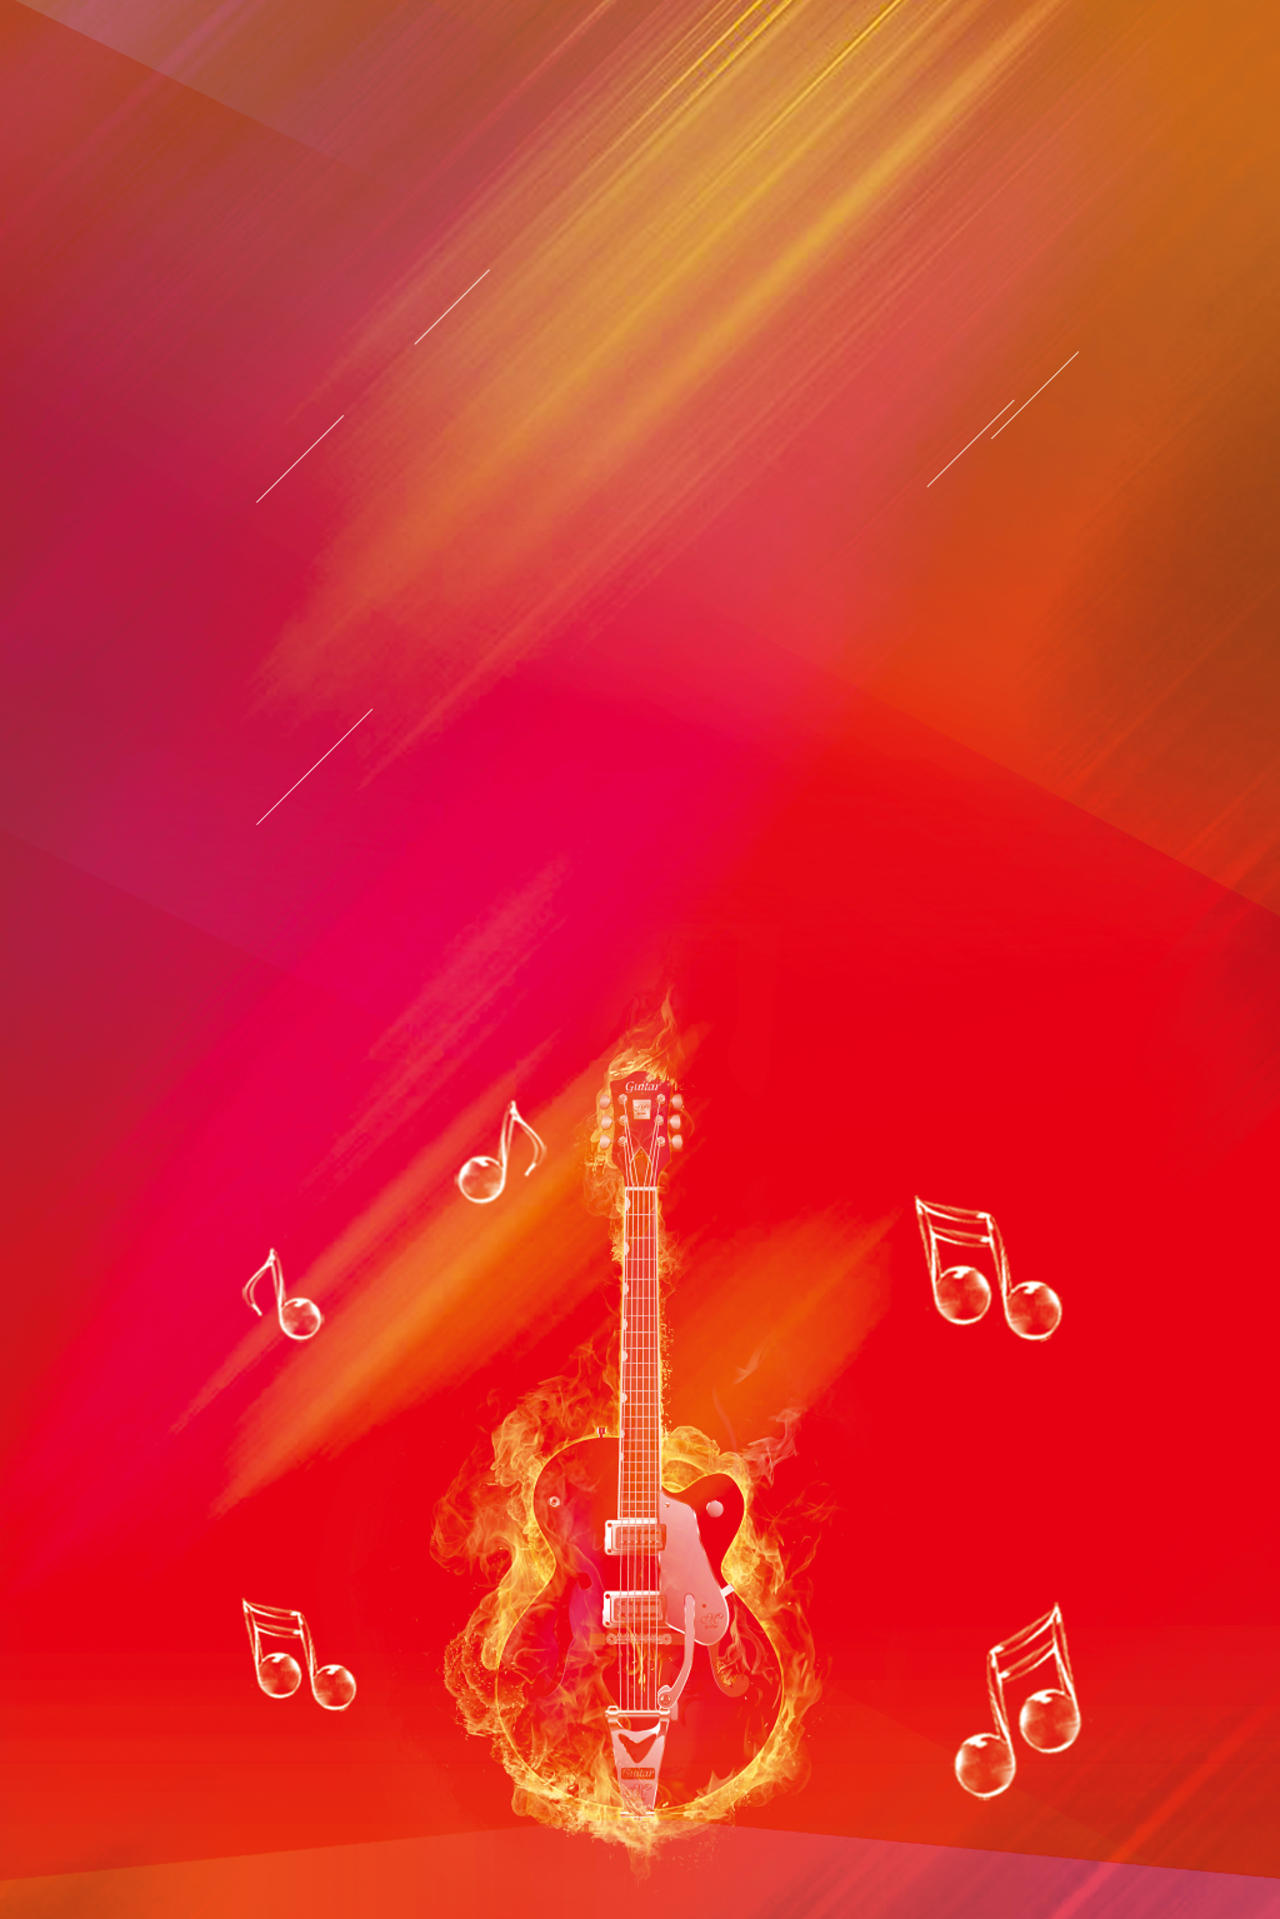 水晶手提琴和乐符音乐节宣传红色背景海报